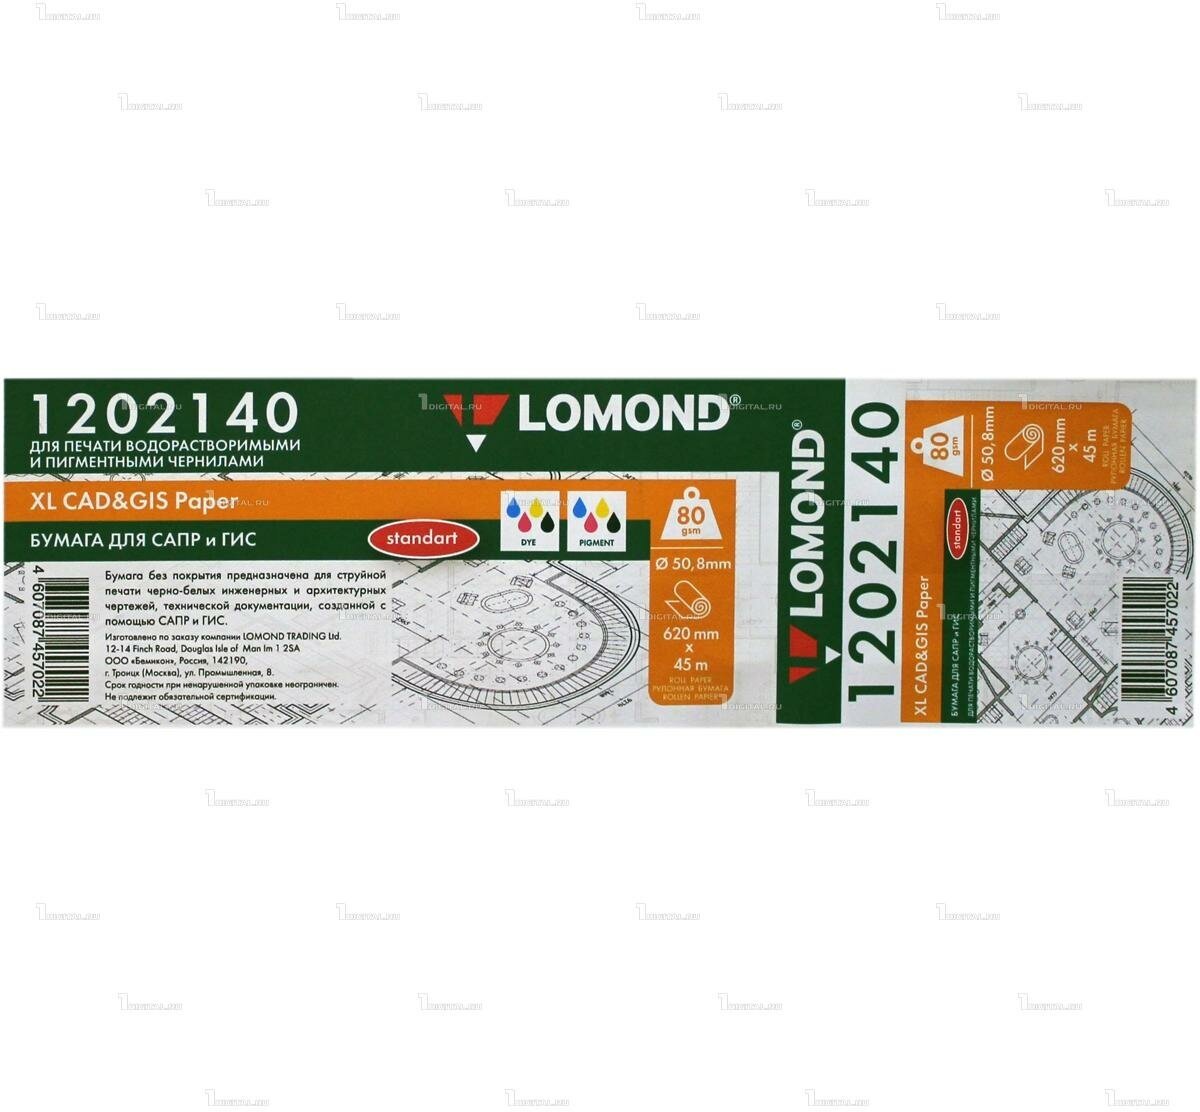 Бумага без покрытия инженерная Lomond XL OFFSET standard рулон A1+ 24' (620 мм 45 м) офсетная 80 г/м2, втулка 50.8 мм (1202140)